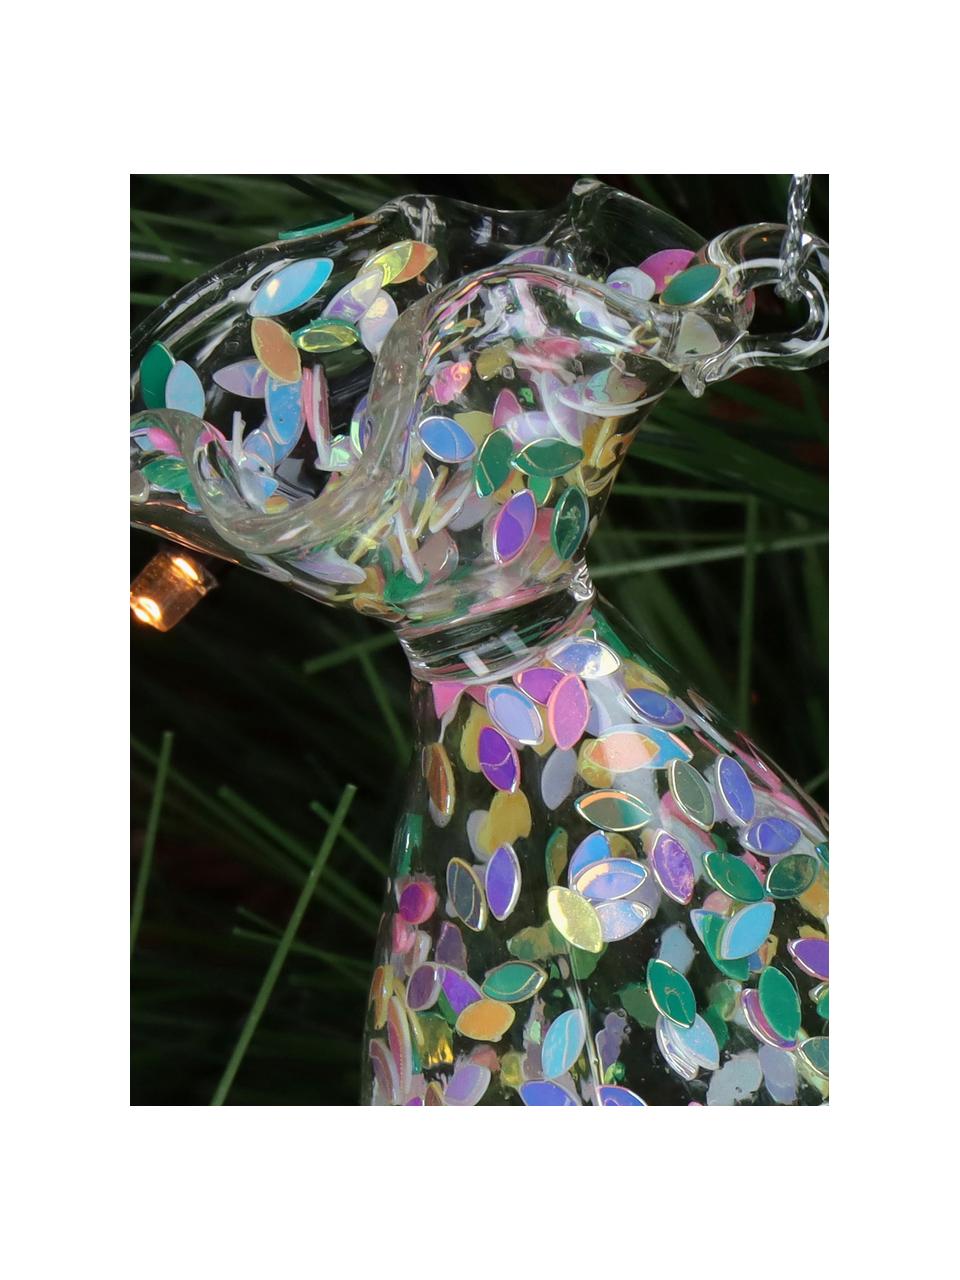 Baumanhänger Iridescent mit Regenbogeneffekt, Glas, Transparent, irisierend, B 3 x H 10 cm